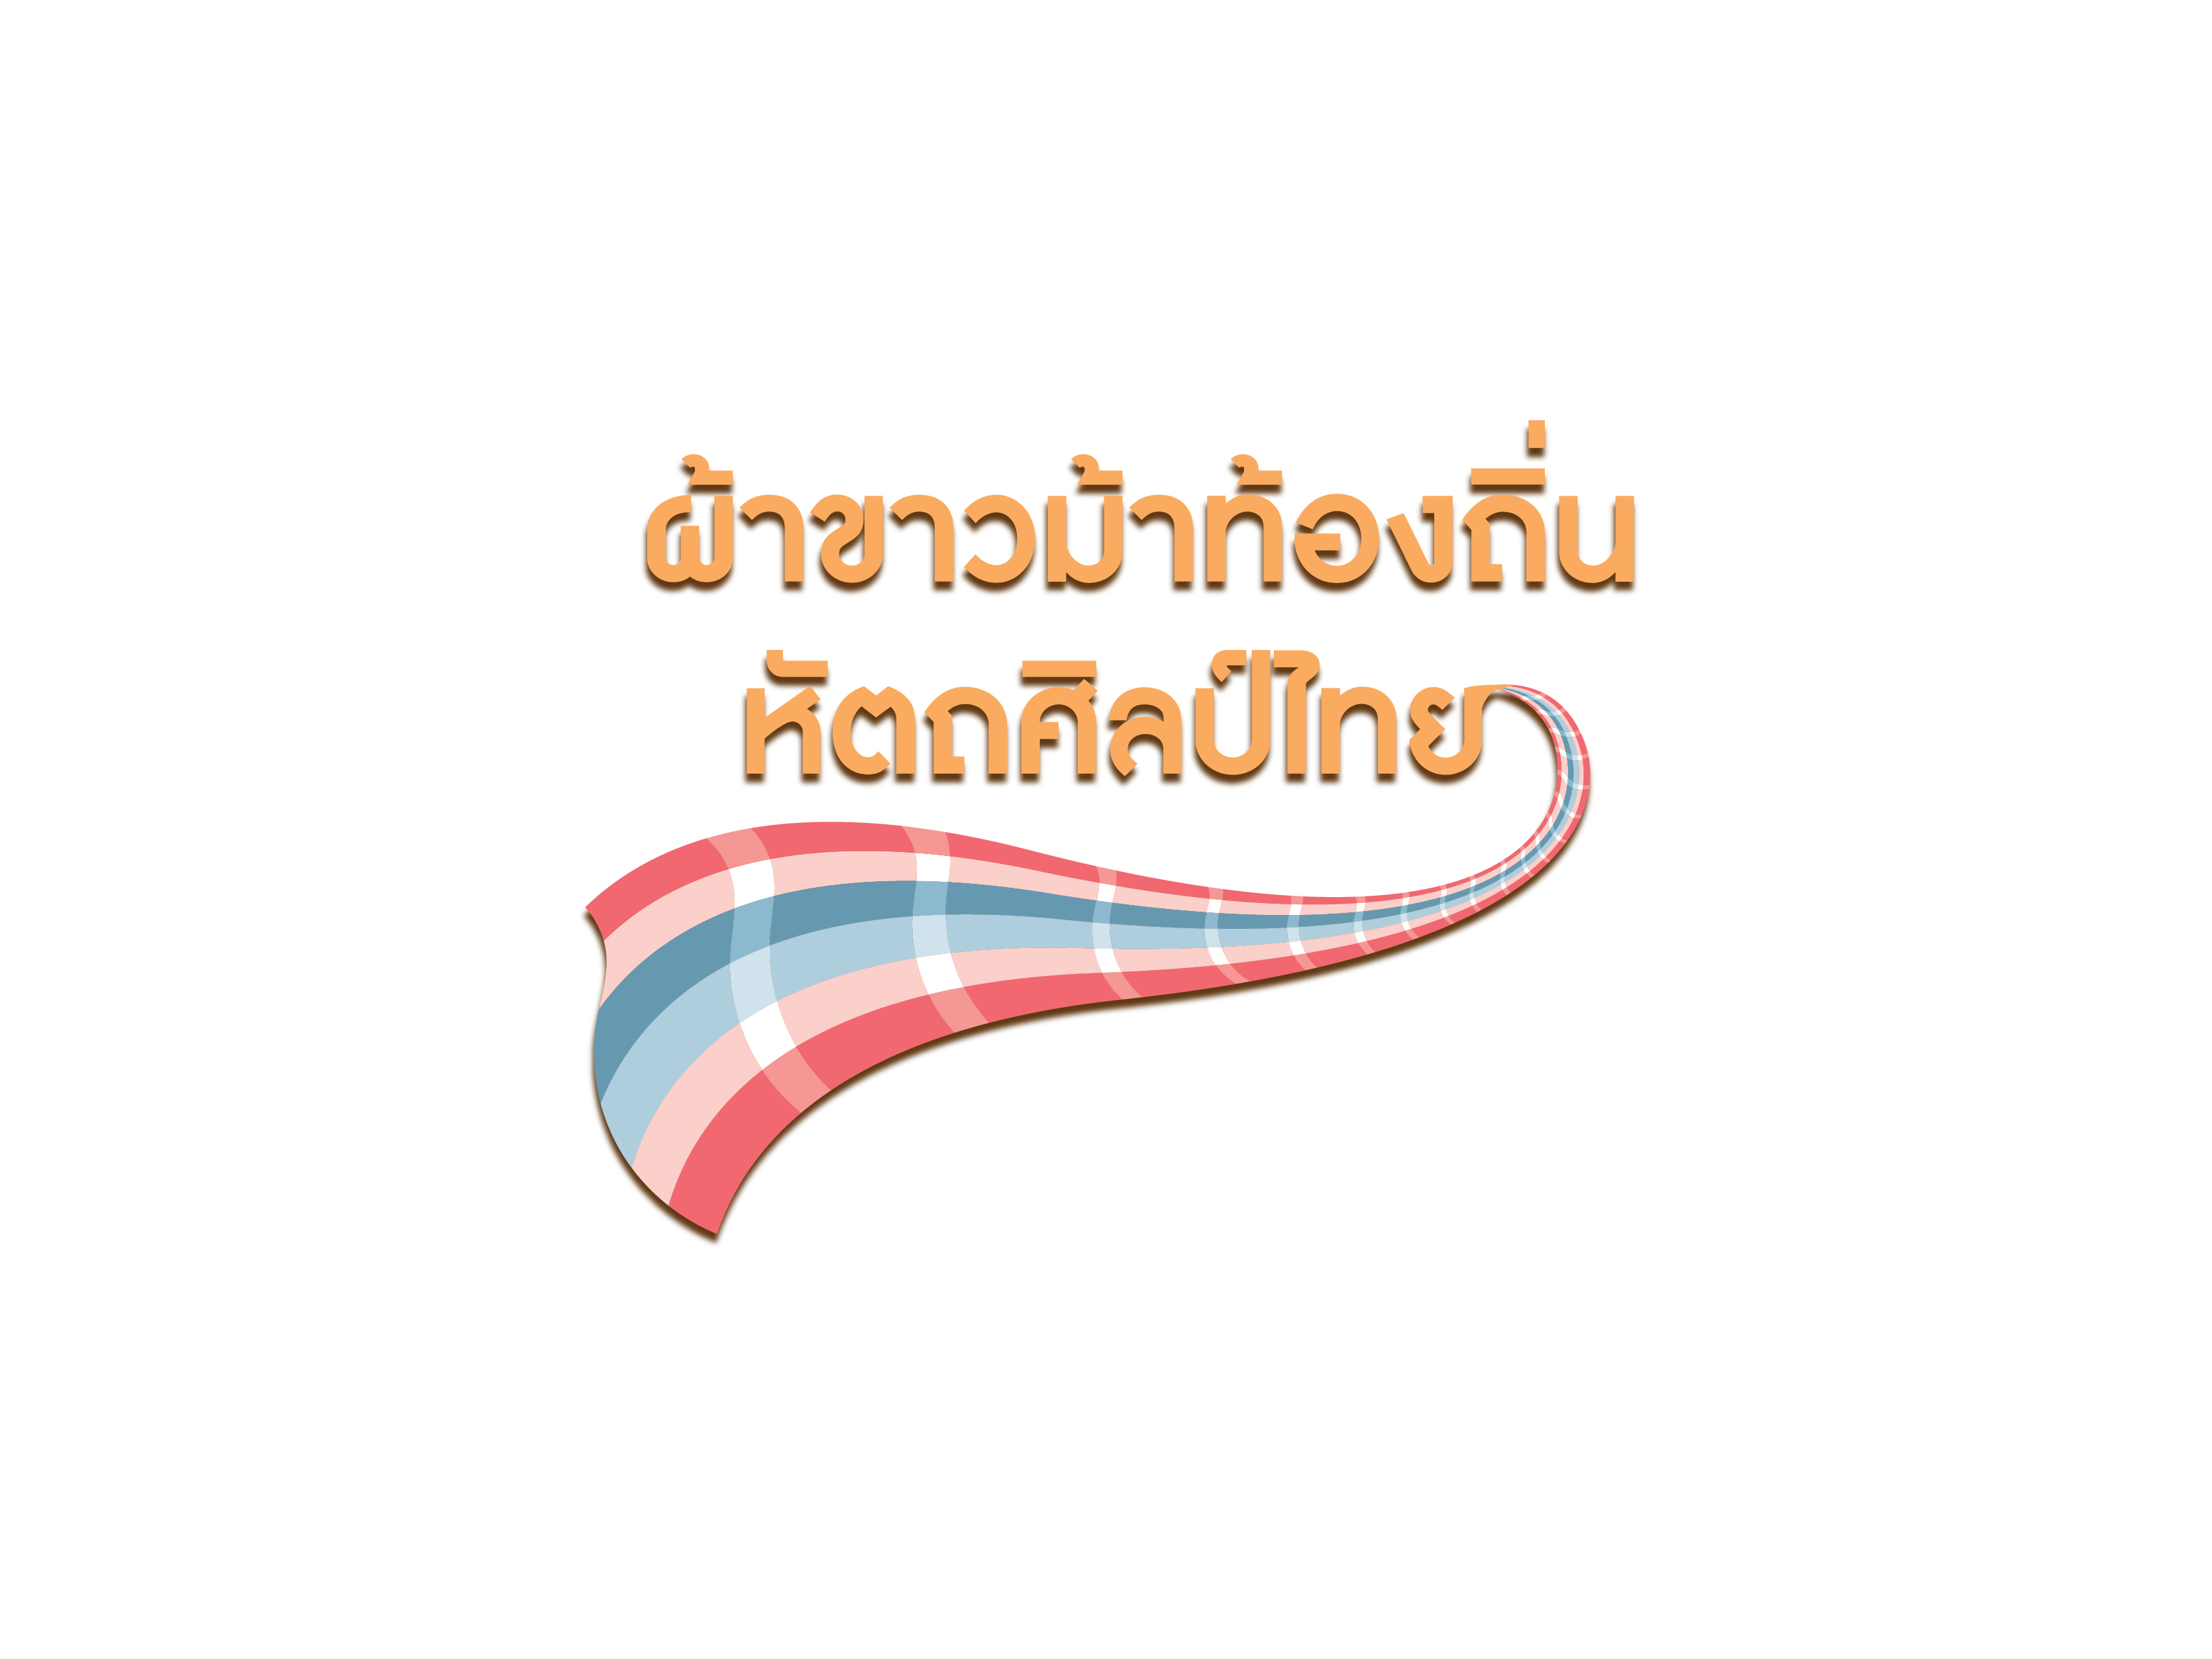 โครงการผ้าขาวม้าท้องถิ่น หัตถศิลป์ไทย ปี 2559-2560